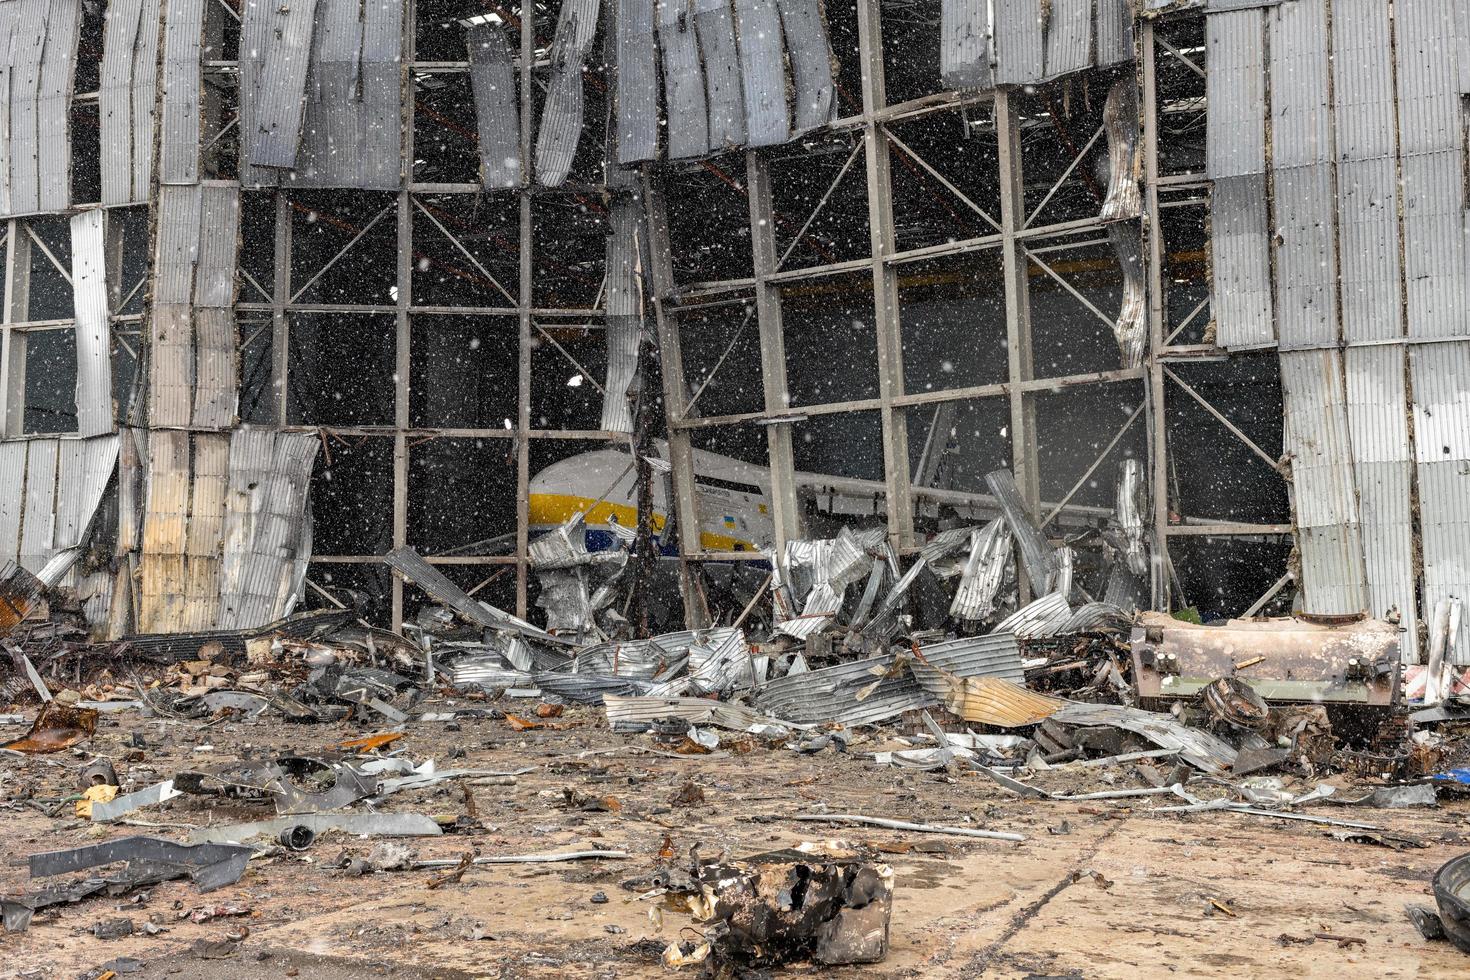 krig förstört på ukrainska flygplatsen av ryska trupper foto